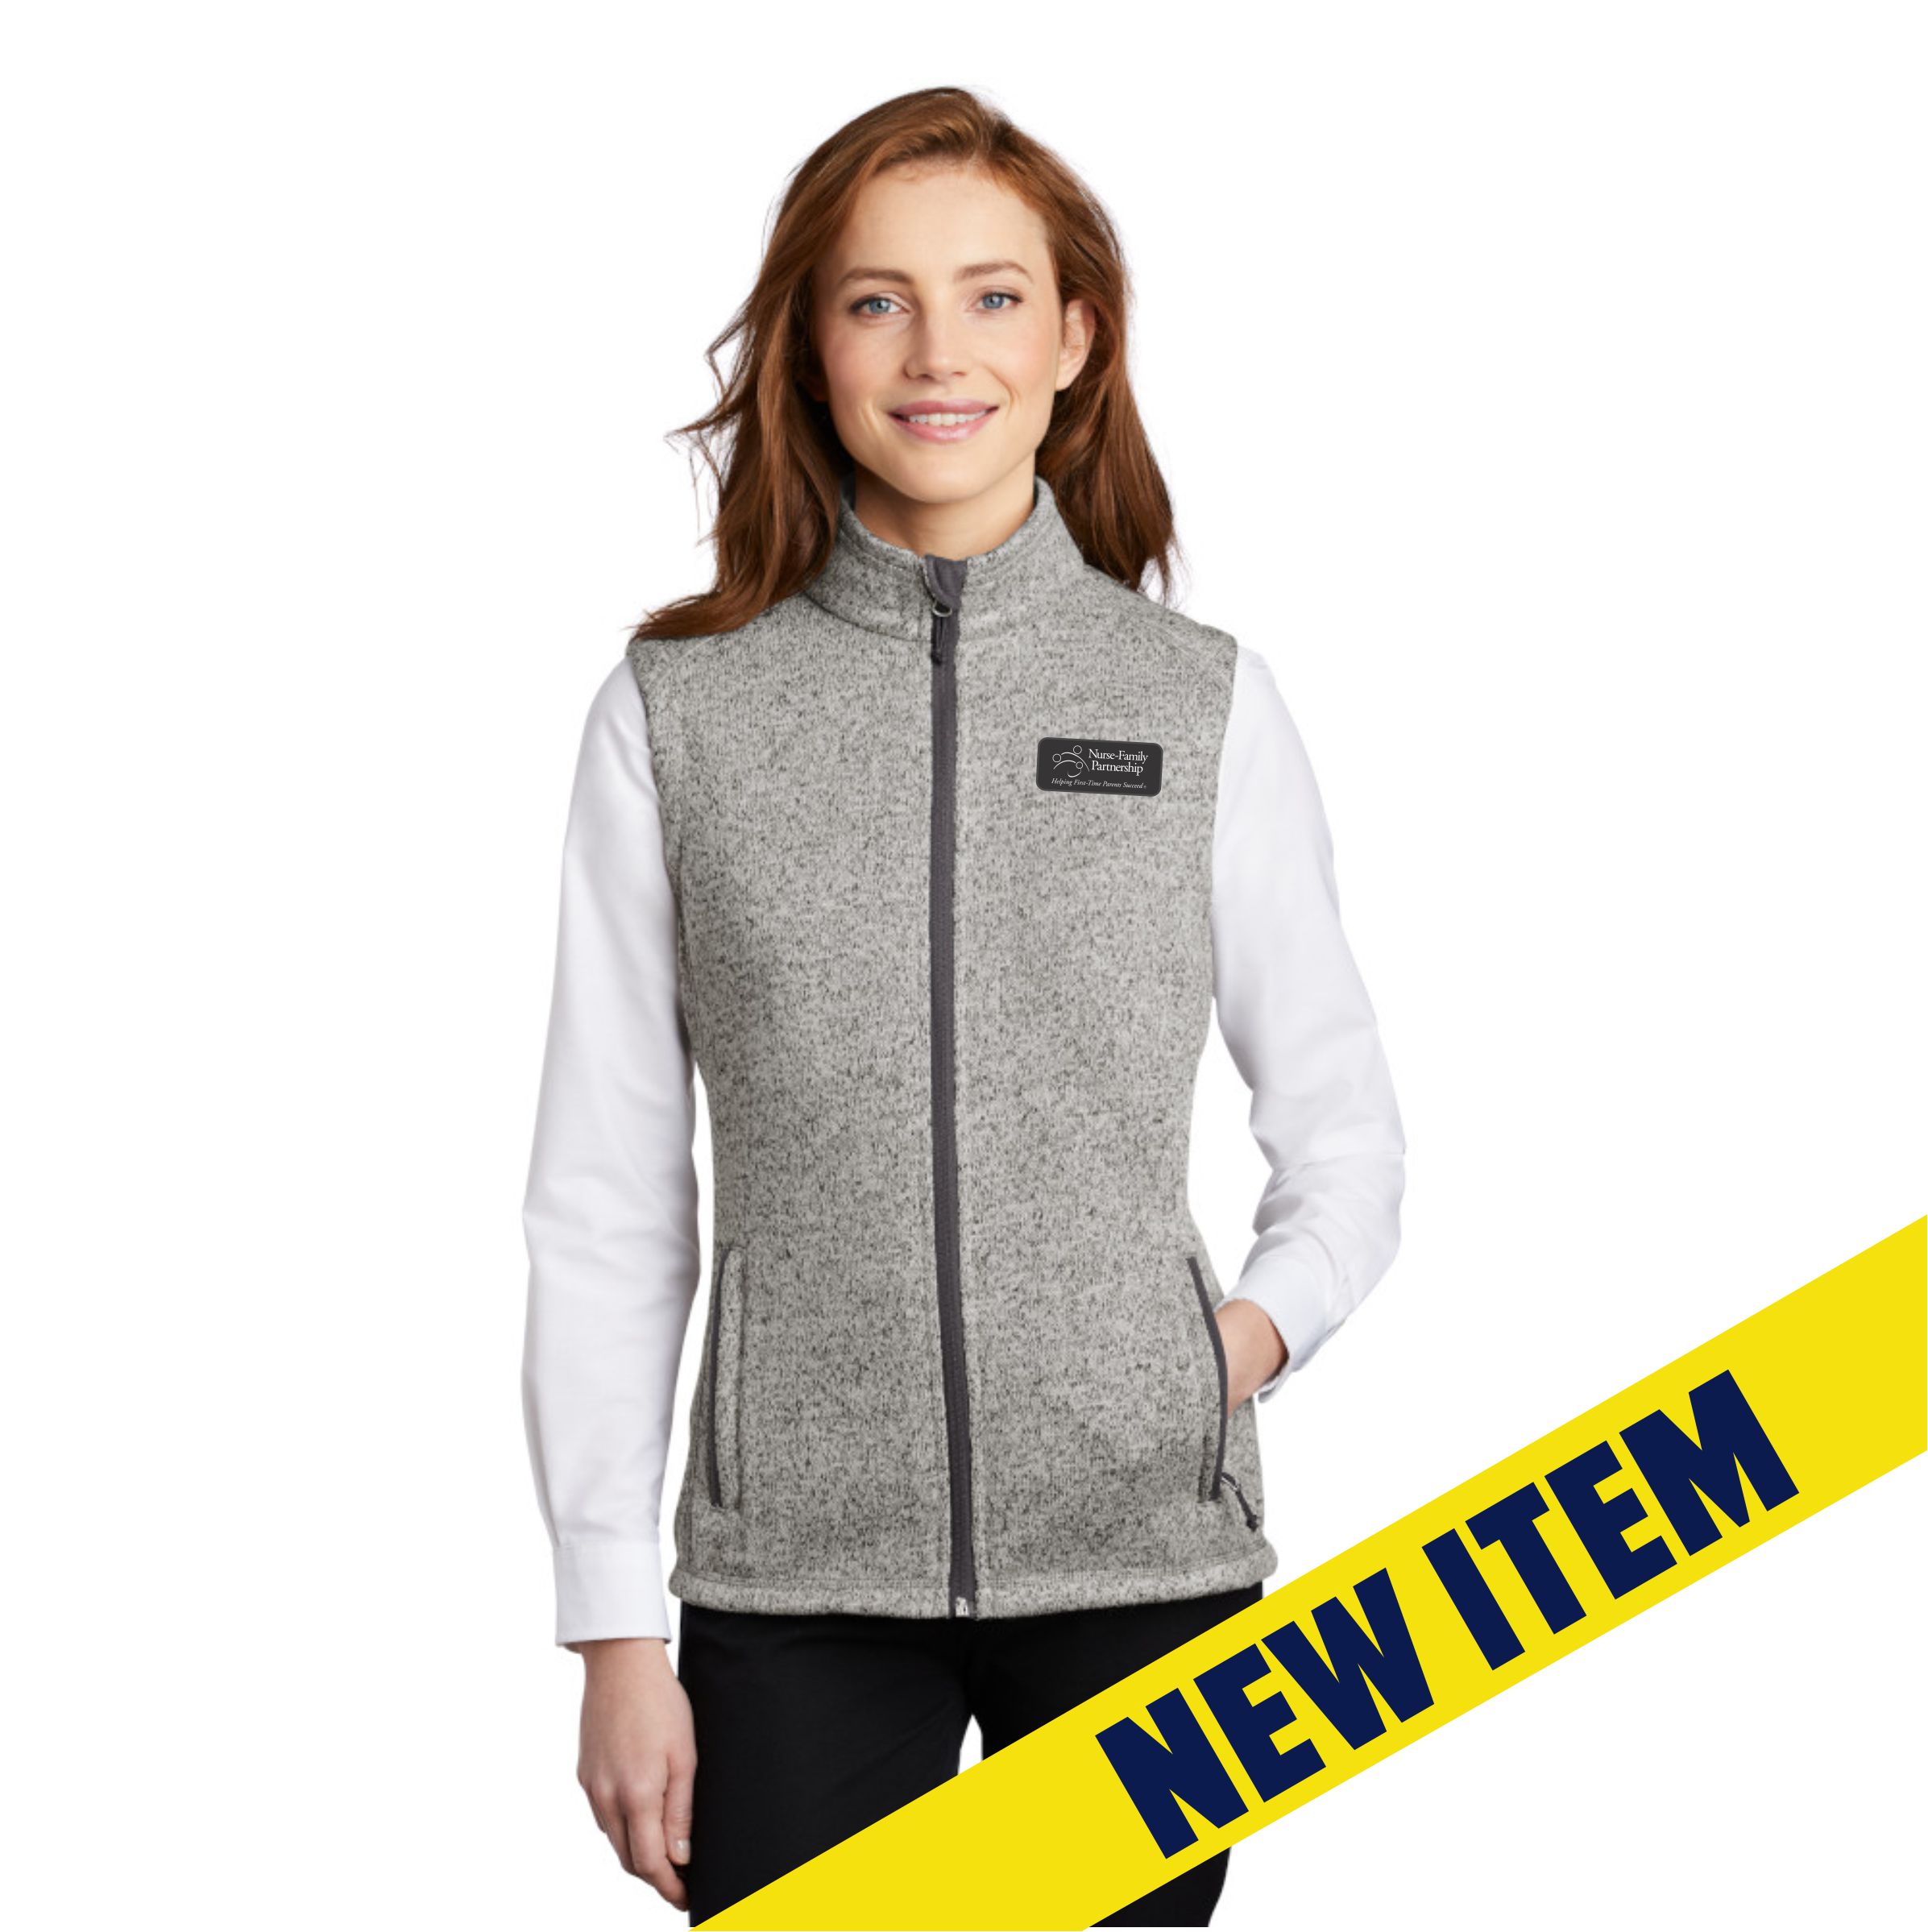 NFP : Sweater Fleece Vest, LADIES